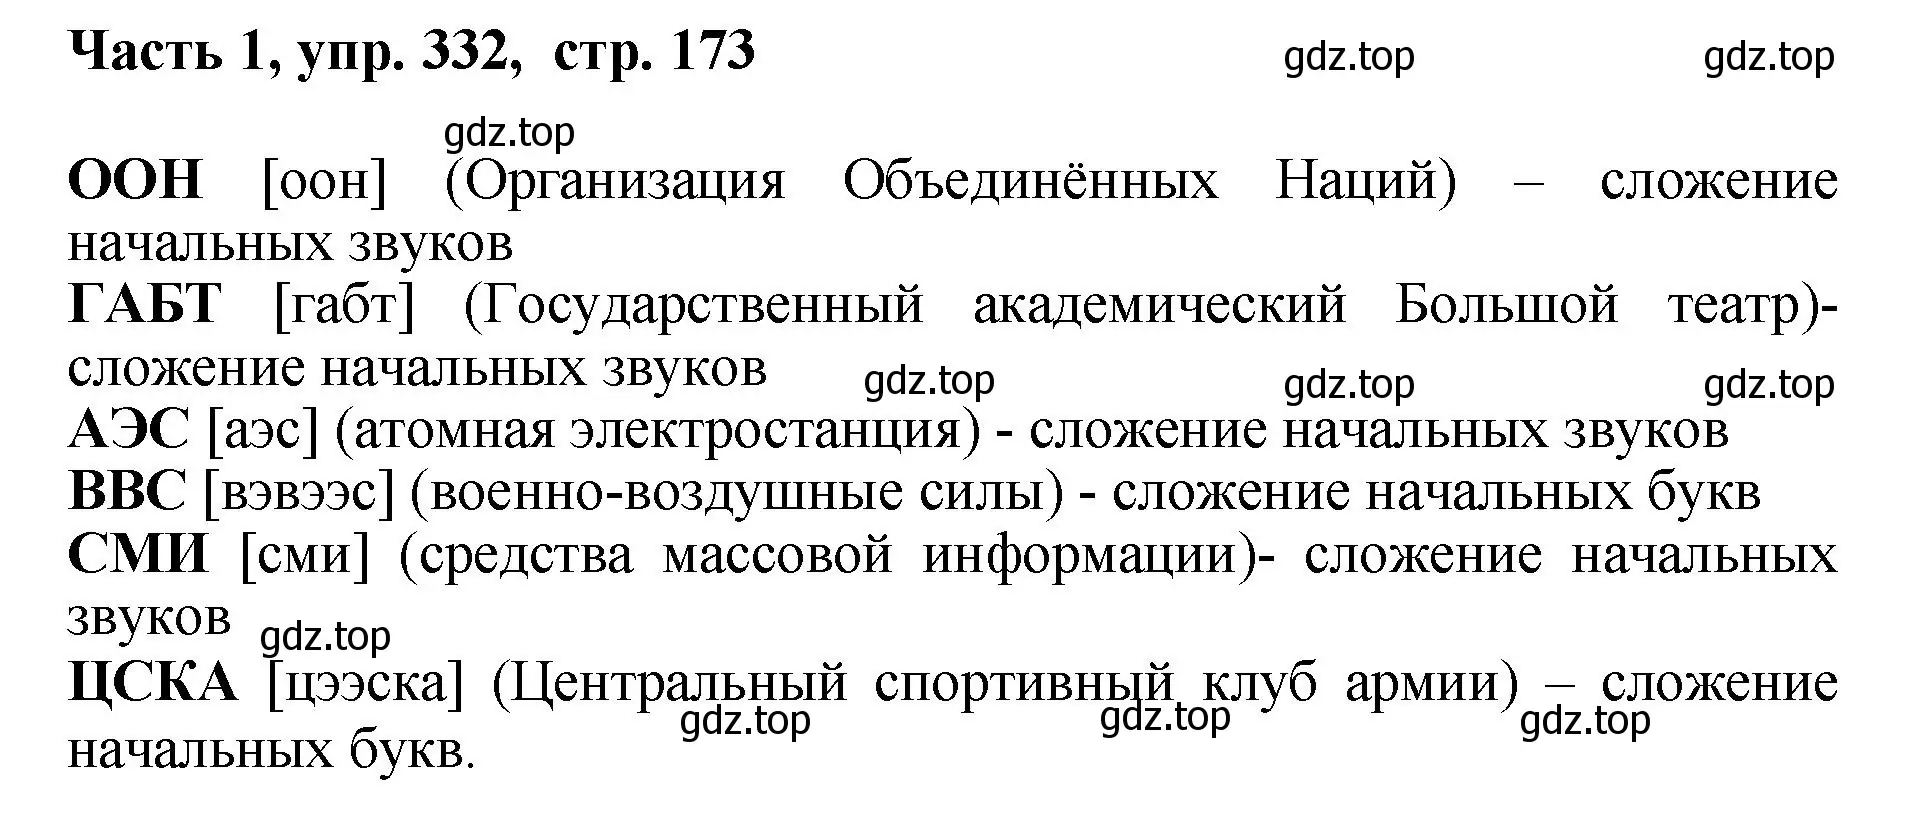 Решение номер 332 (страница 173) гдз по русскому языку 6 класс Баранов, Ладыженская, учебник 1 часть